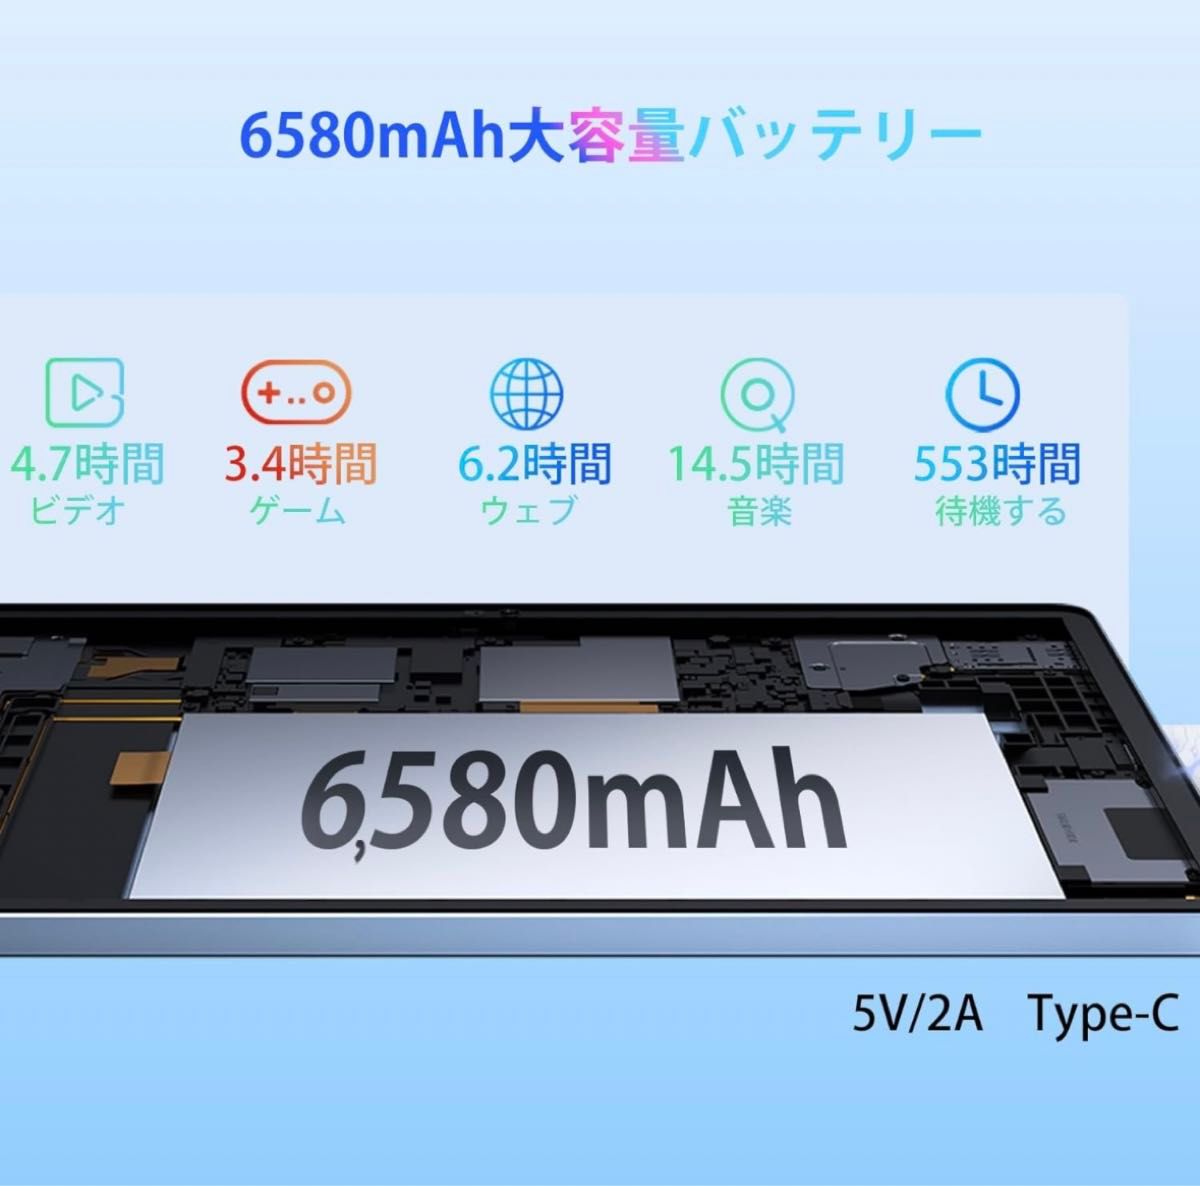 タブレット10.1インチWi-Fiモデル7 GB RAM+128 GB